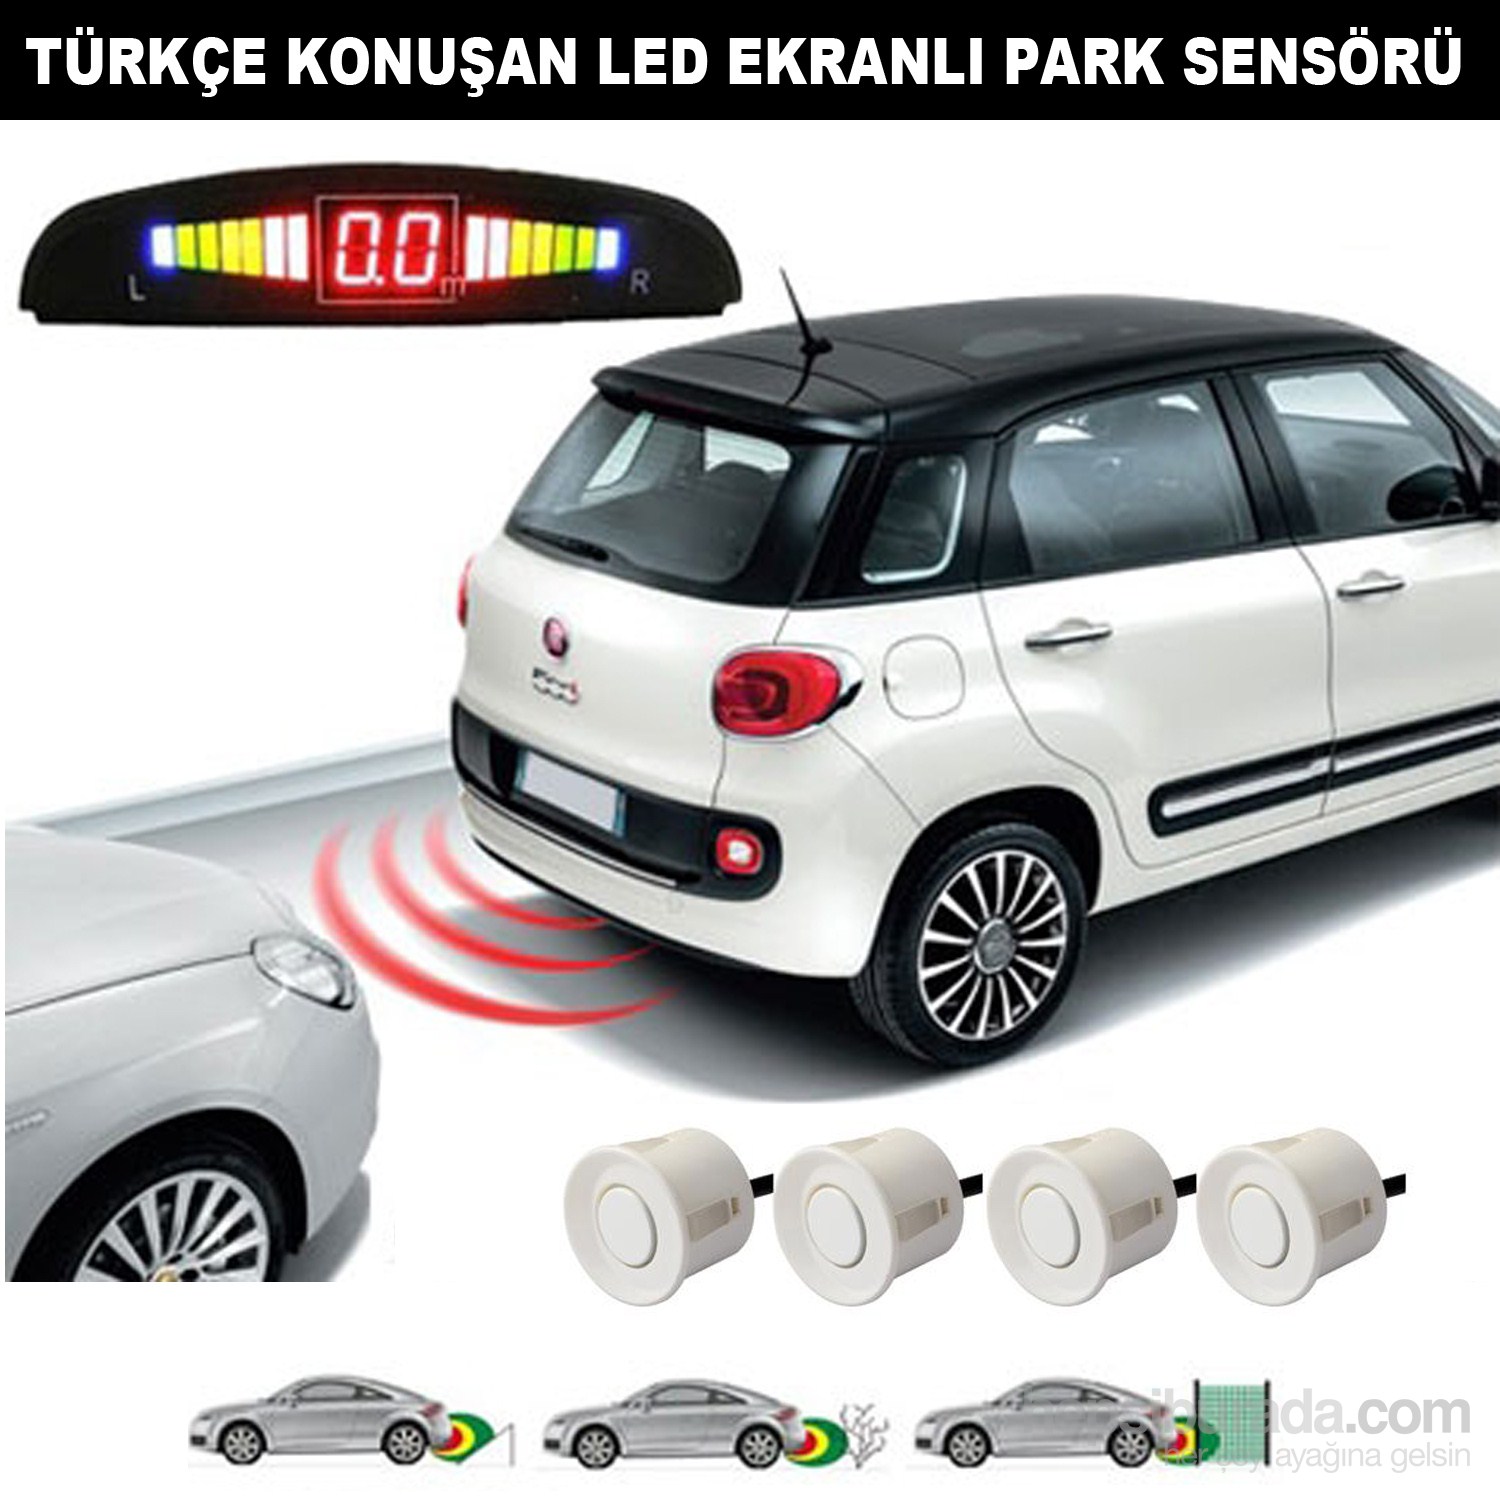 AutoCet Beyaz Sensörlü Türkçe Konuşan Park Sensörü 4216a